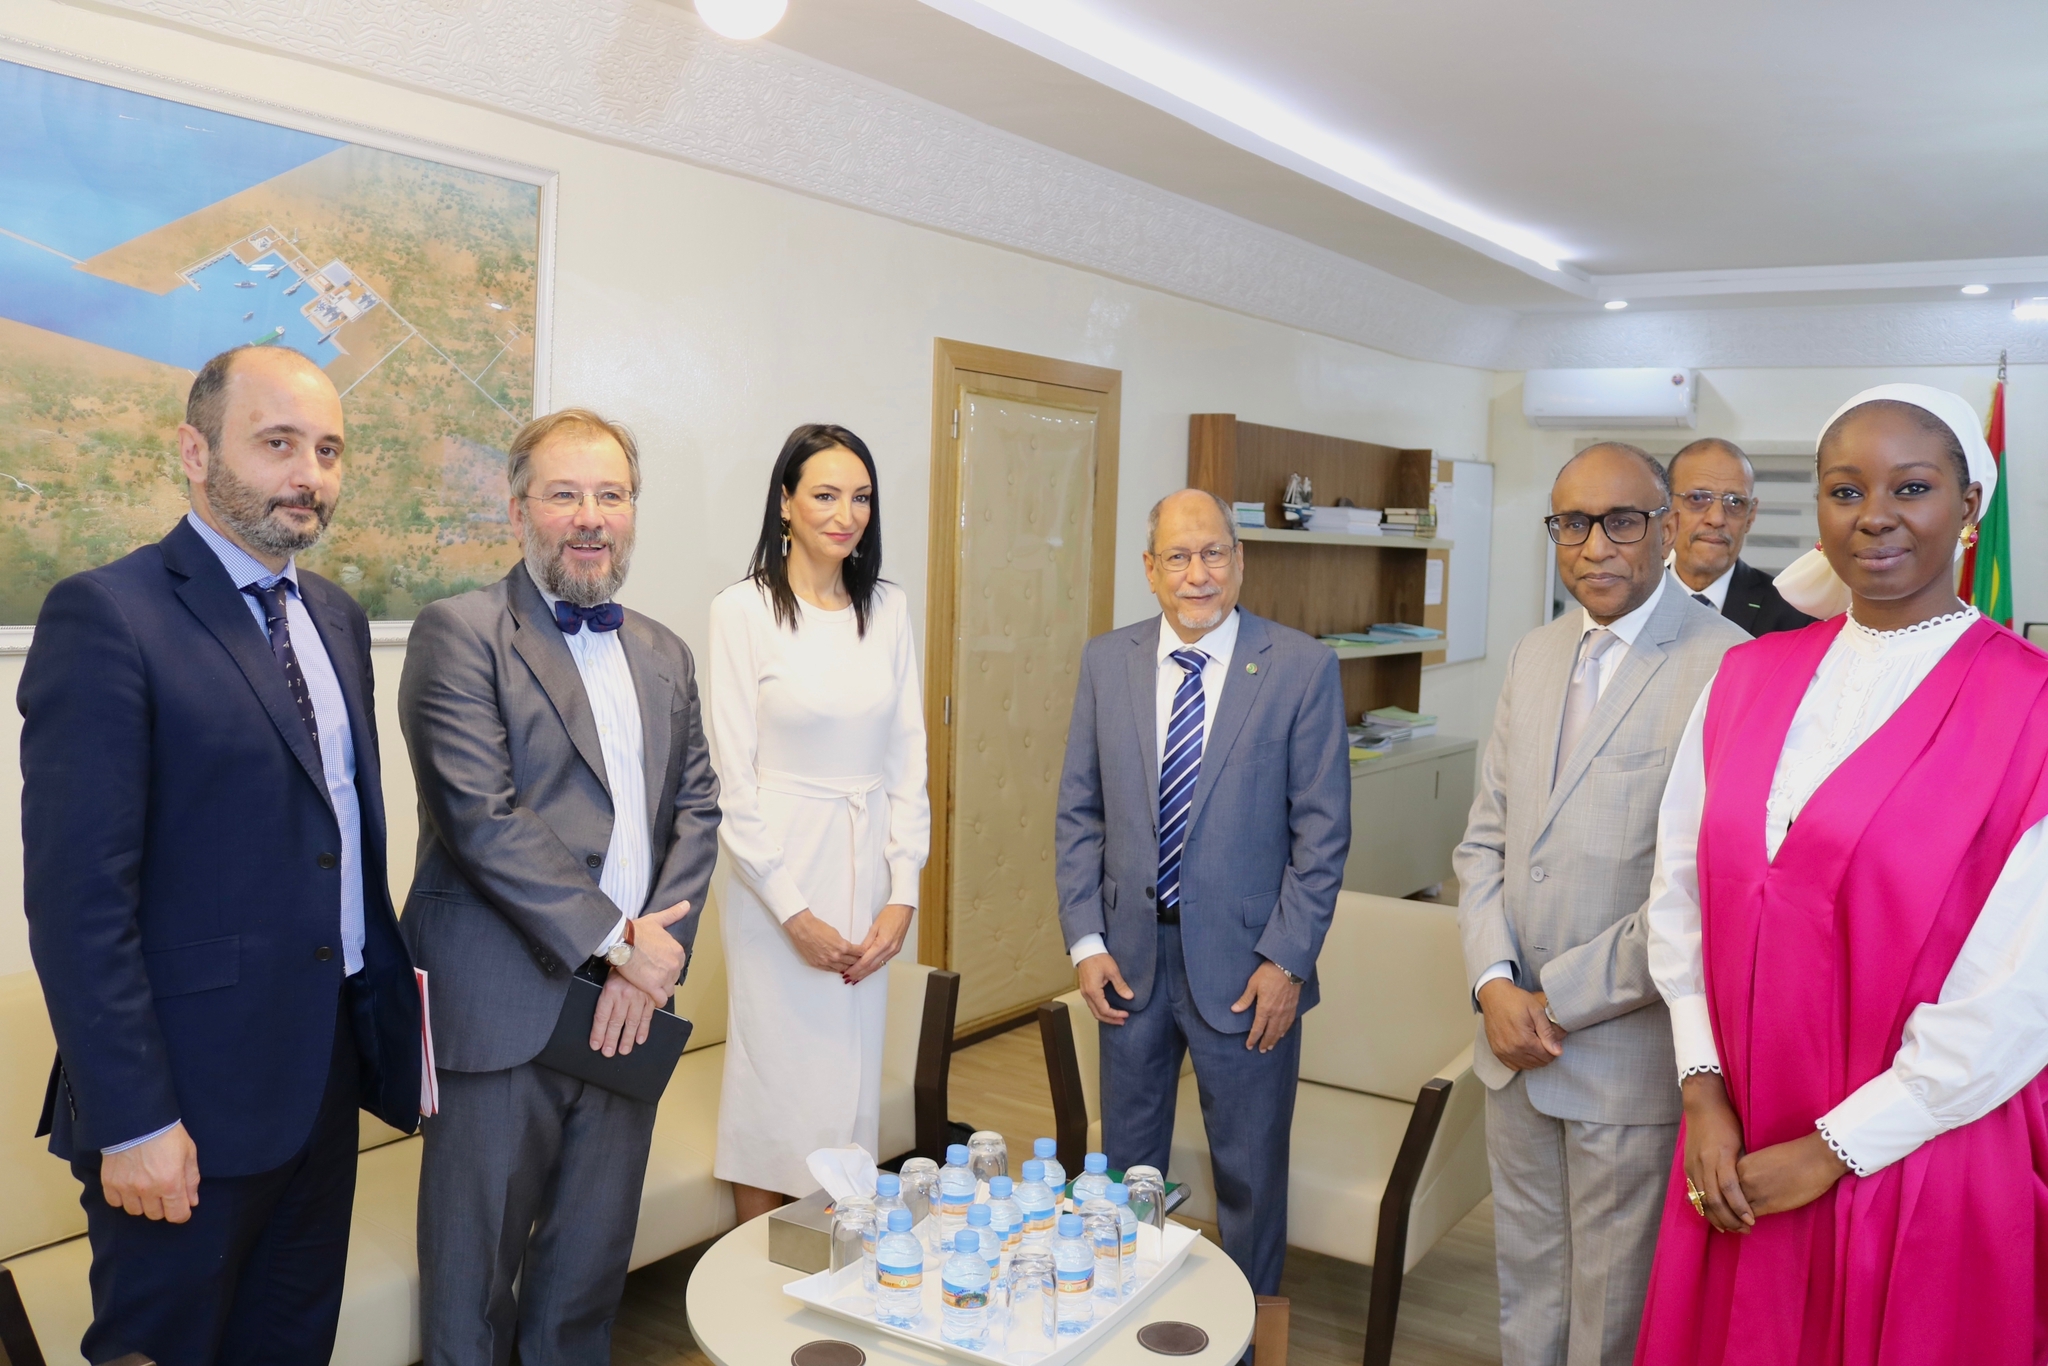 La consejera de Empresa, Empleo, Universidades y Portavocía, Valle Miguélez, se reunió con el  secretario general del Ministerio de Asuntos Económicos de Mauritania, Yacoub Ahmed Aicha.